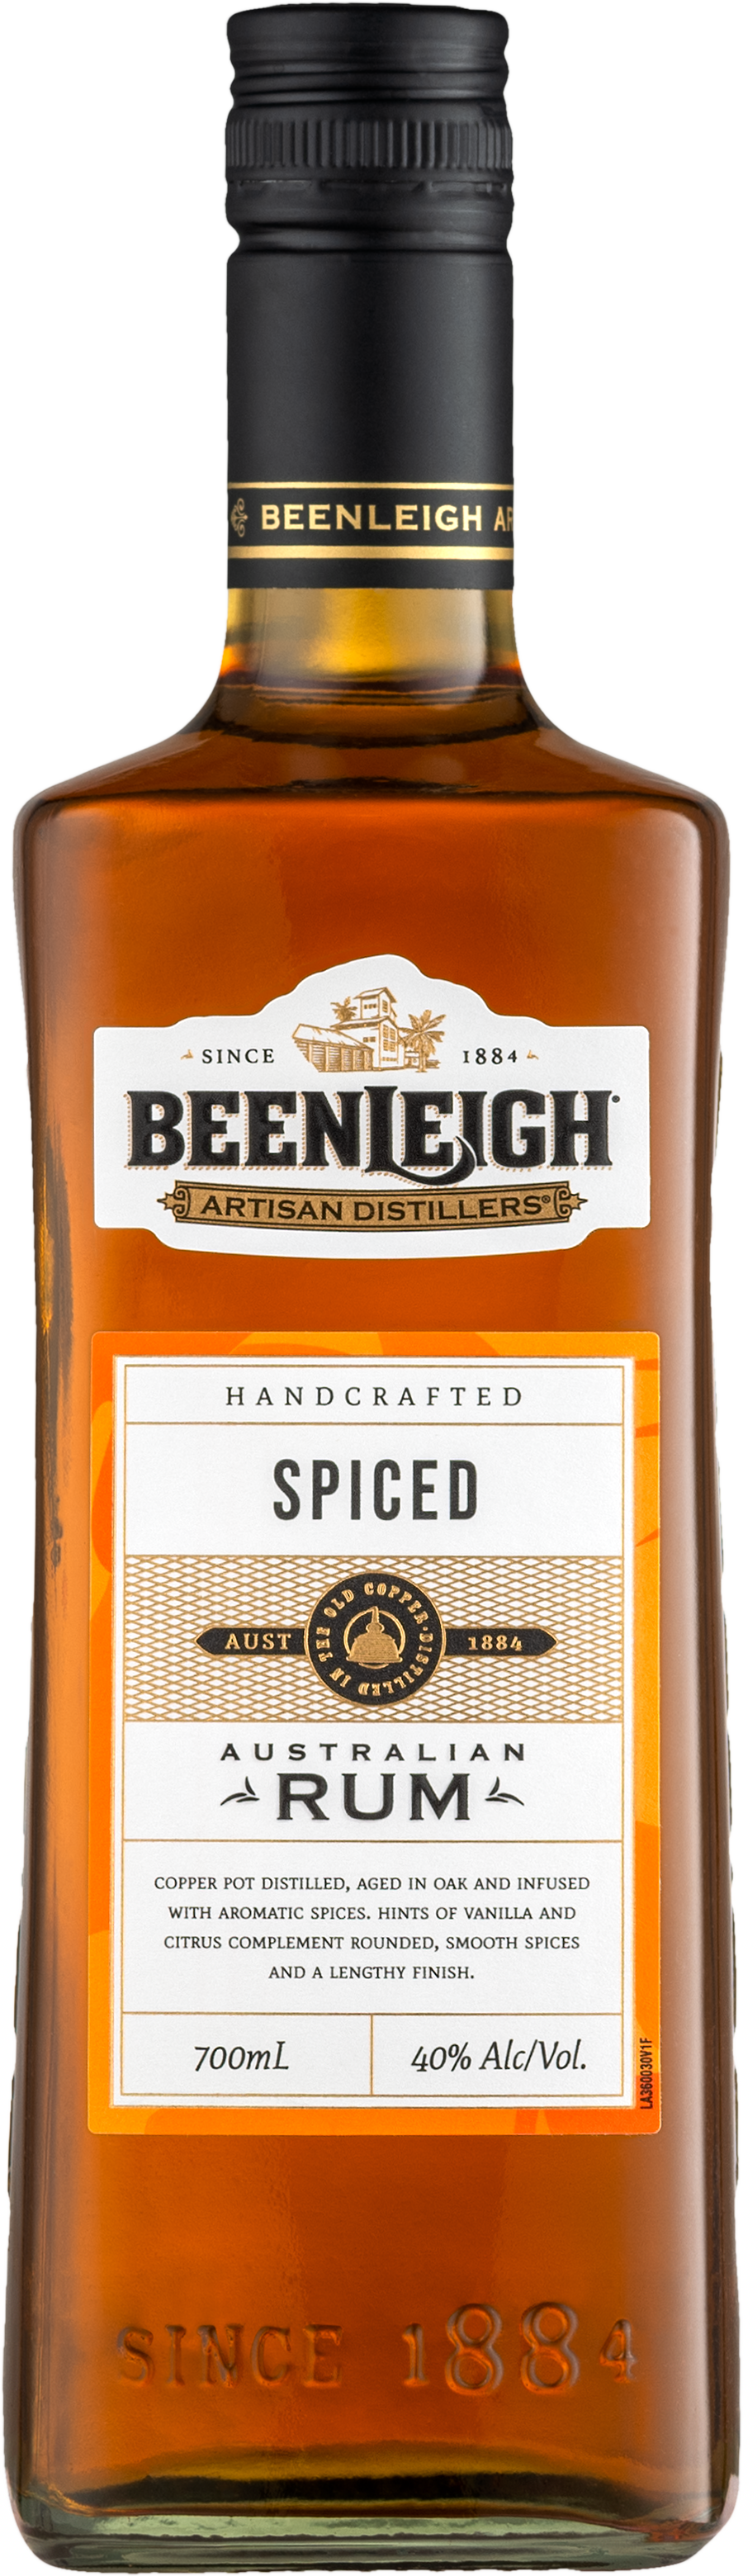 Beenleigh Australian Spiced Rum 40% 0,7l